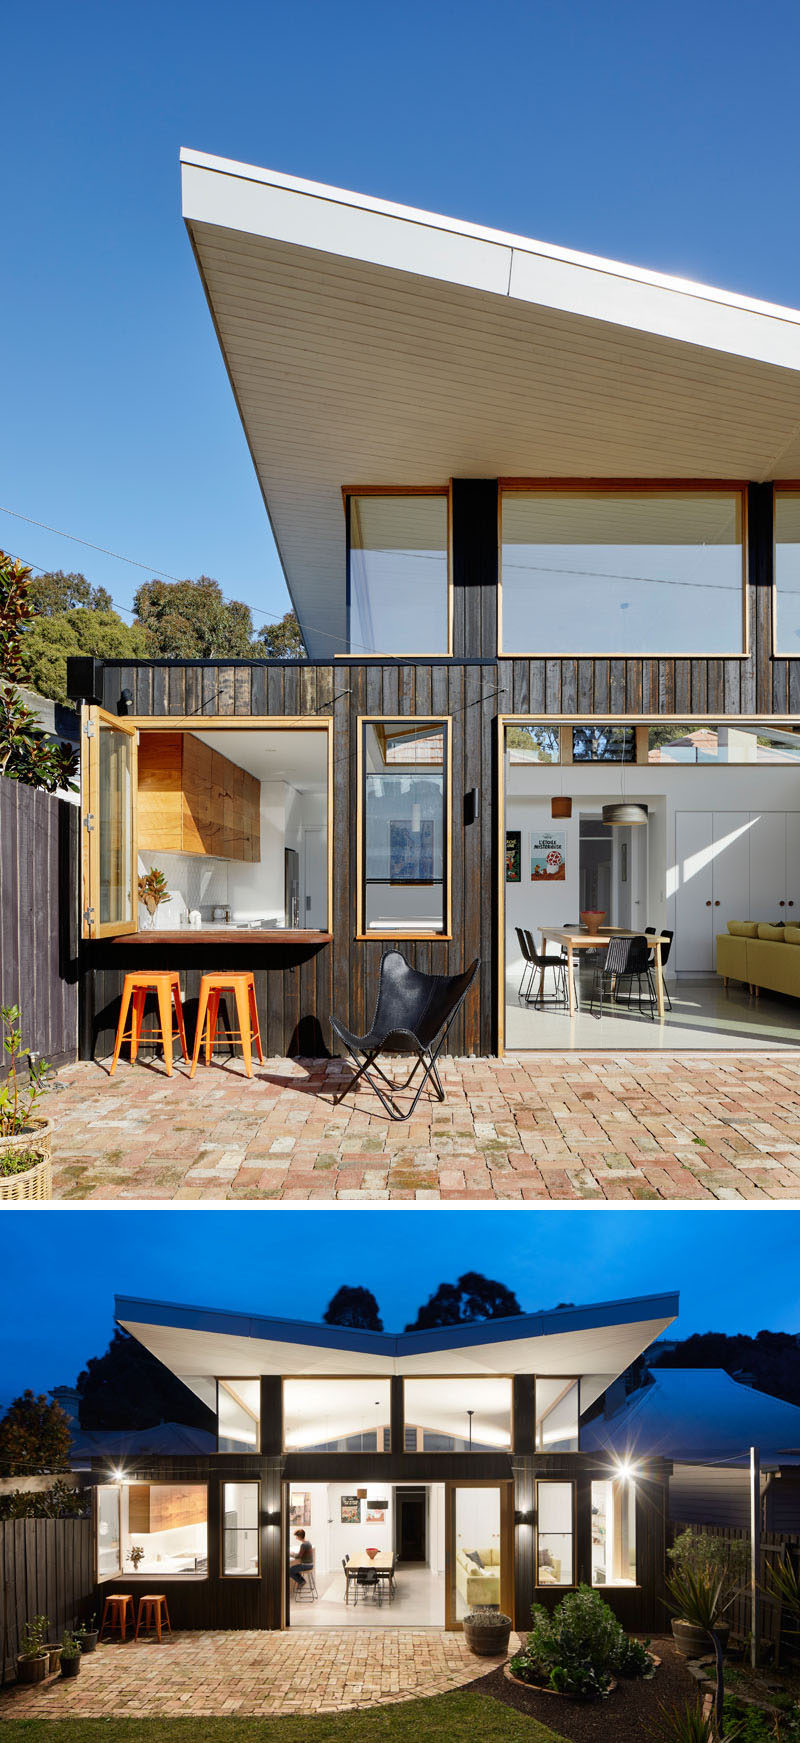  Ben Callery Architects вместе со строительной компанией Truewood Construction спроектировали и завершили современную пристройку к дому в Мельбурне, Австралия, владельцы которого хотели открыть заднюю часть дома, чтобы наслаждаться солнцем. #ModernHouseExtension # Roof #ModernRoof #Architecture 